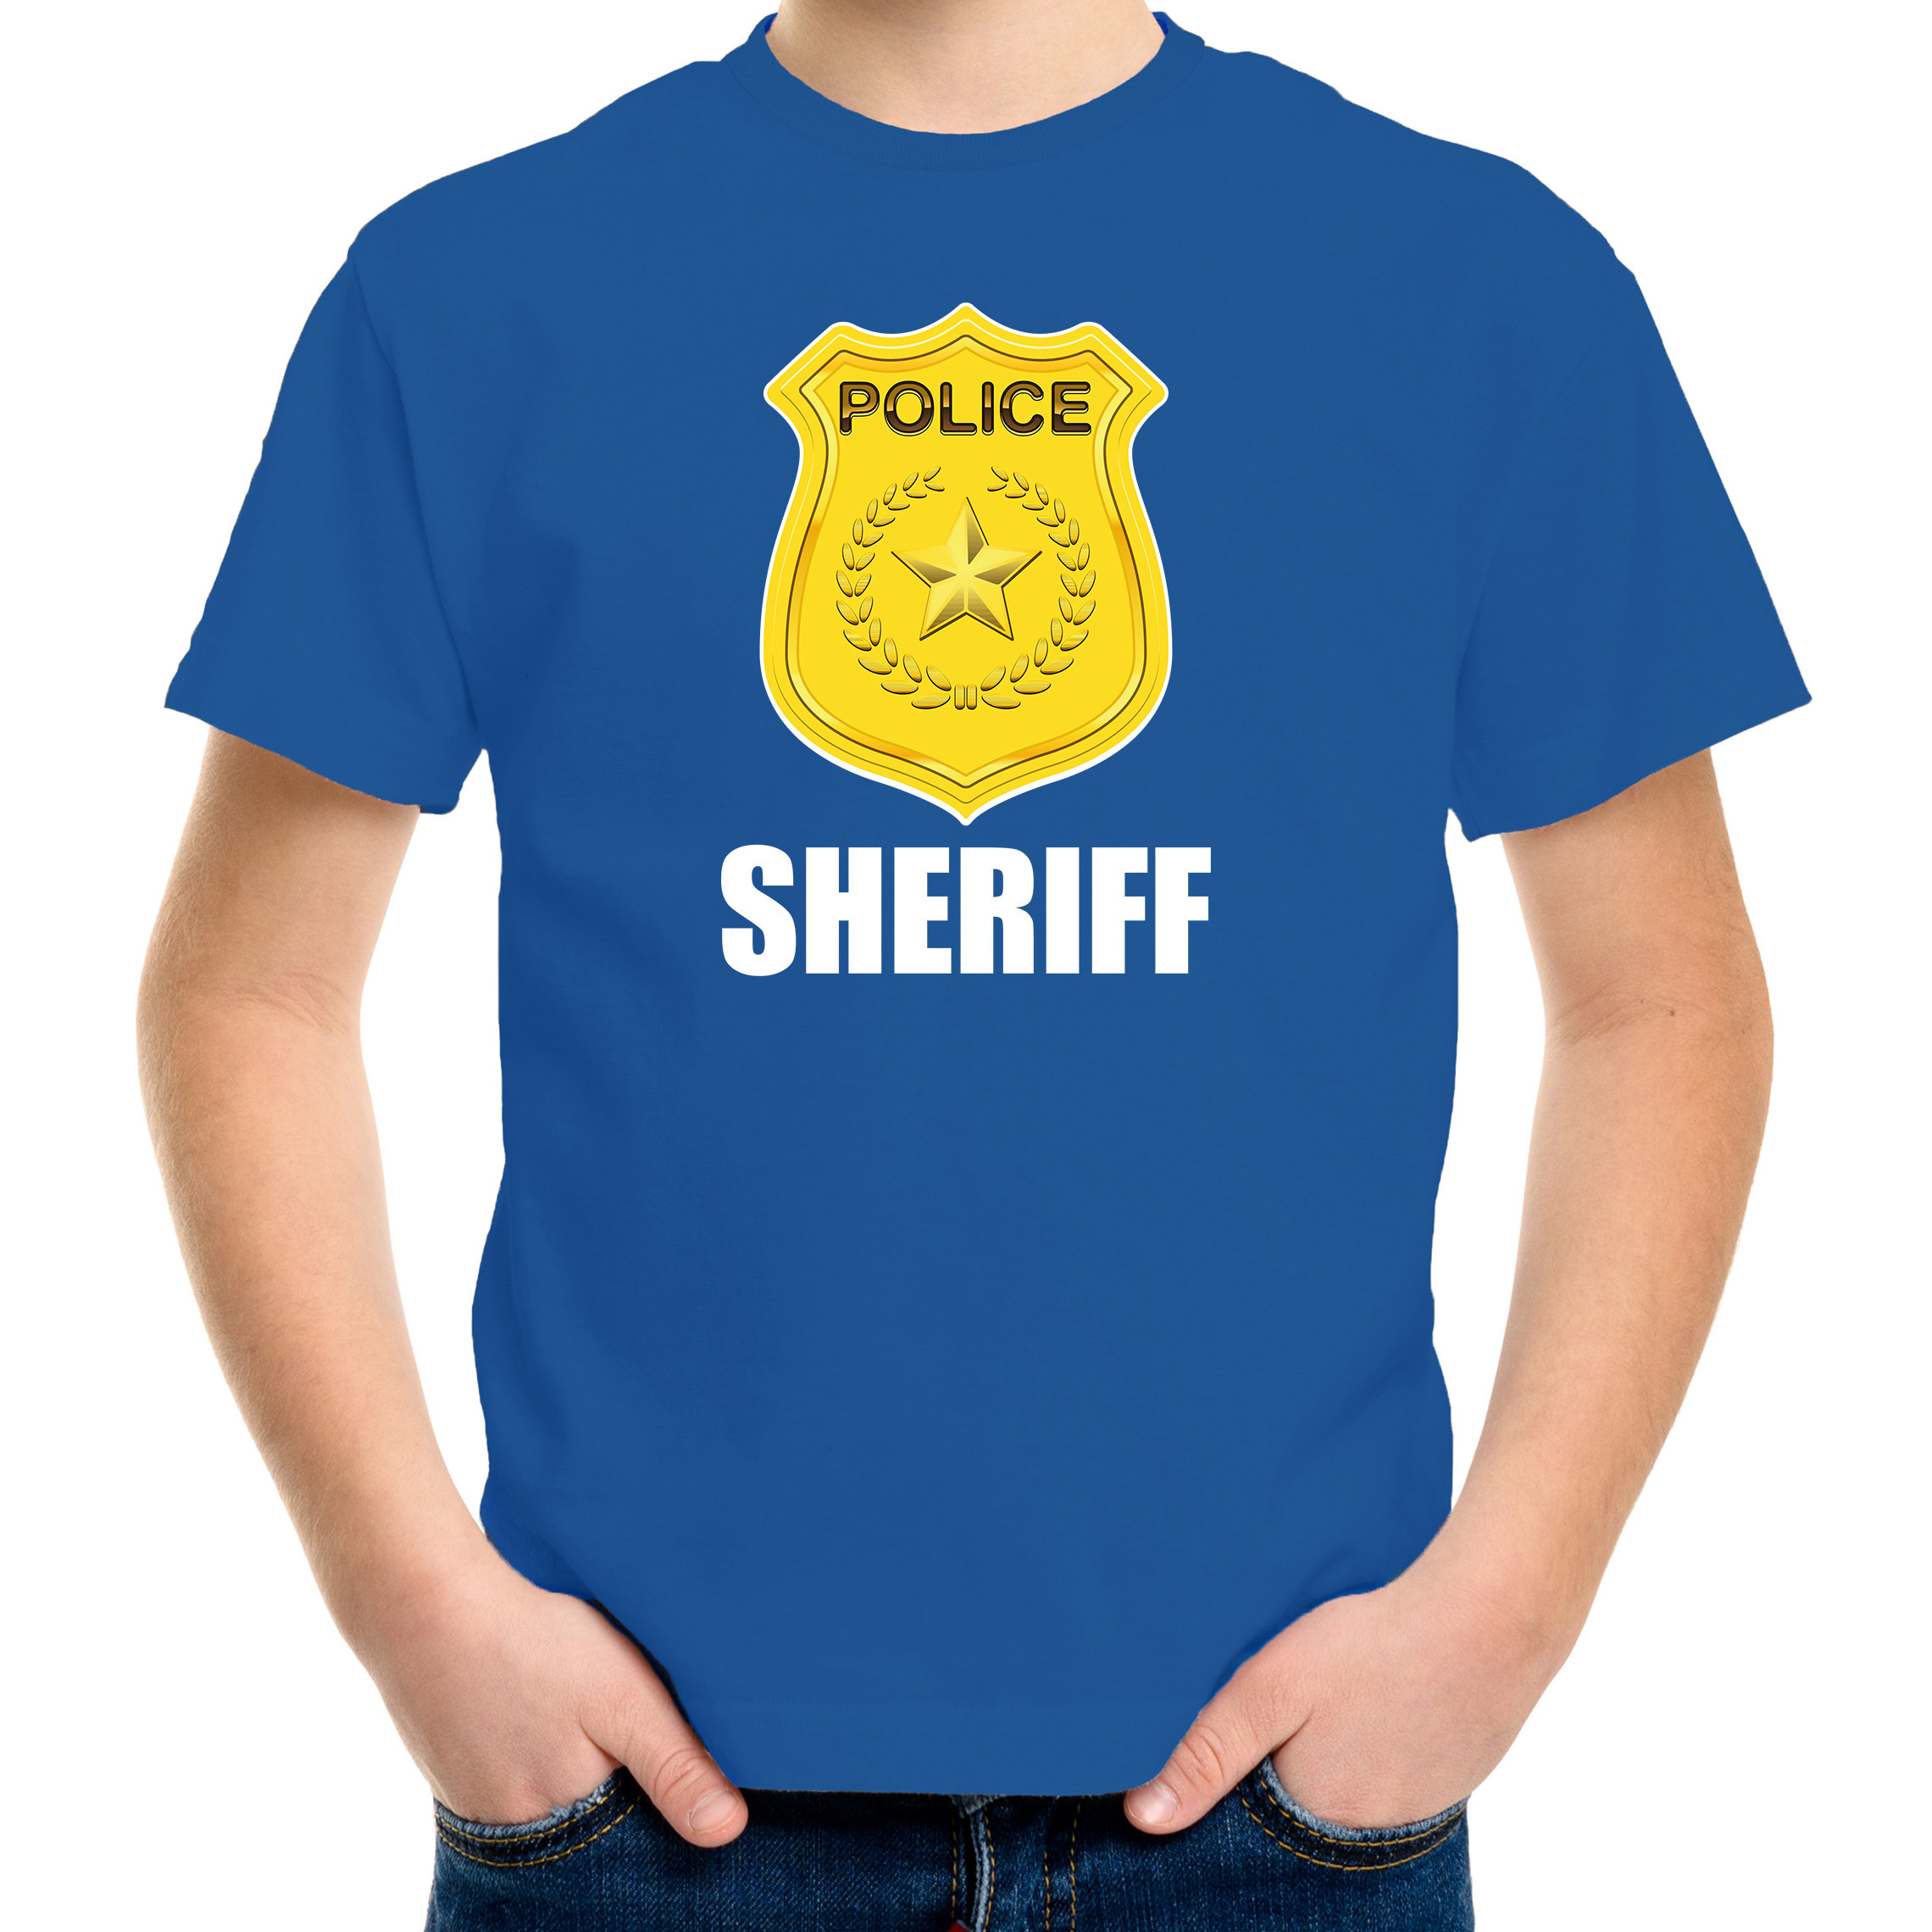 Sheriff police / politie embleem t-shirt blauw voor kinderen